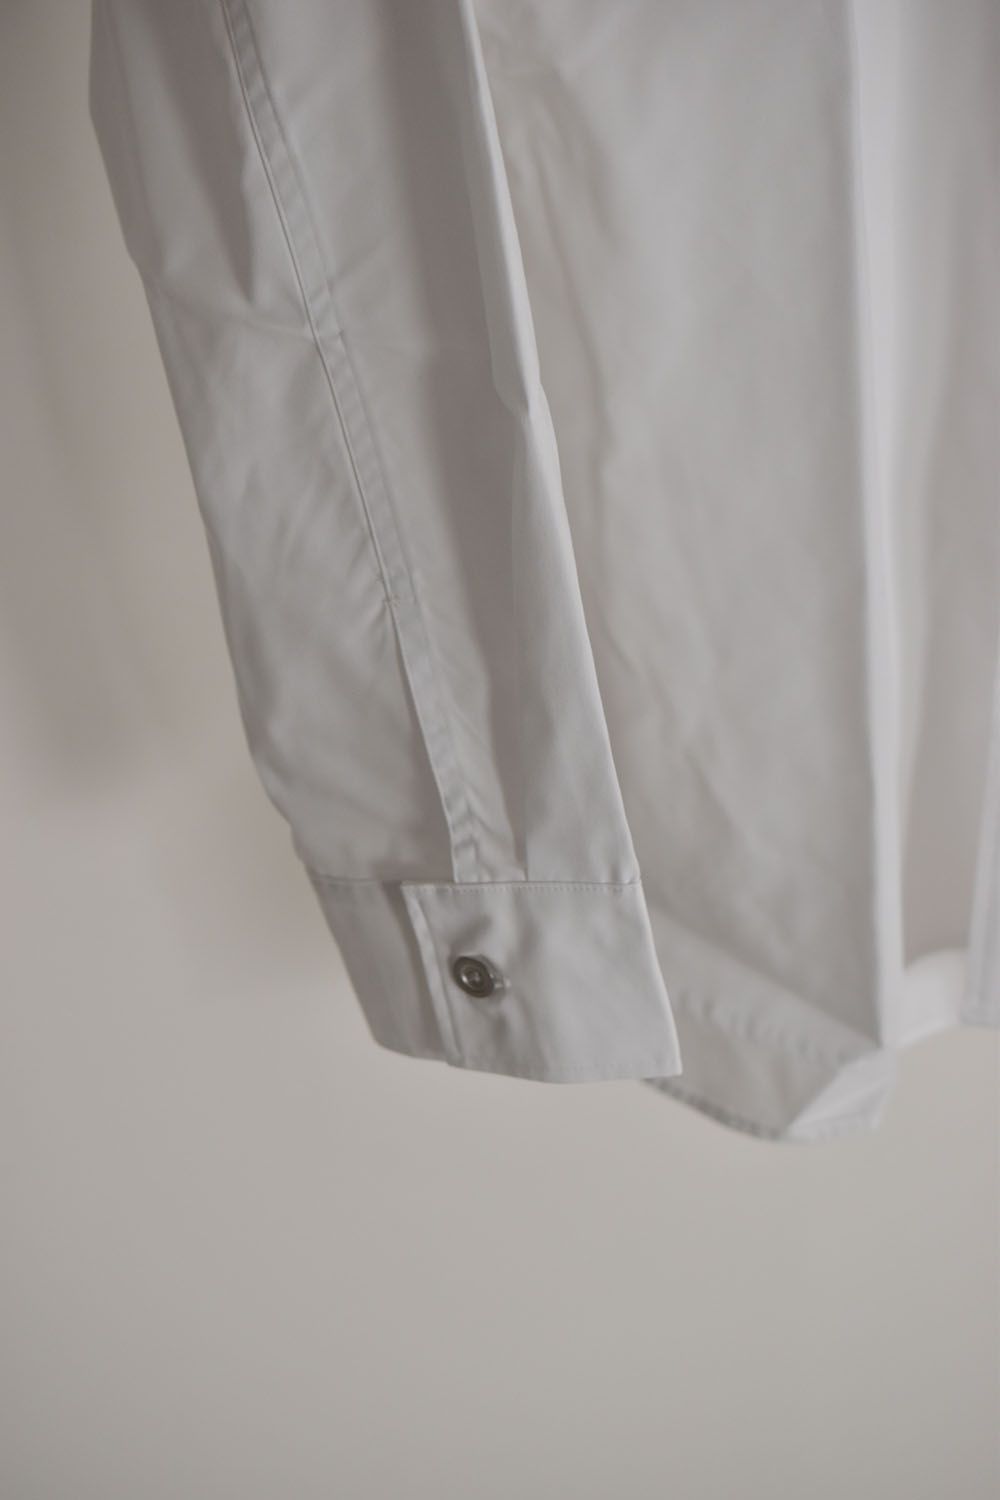 Metal Button Loose Fit Shirt"White"/メタルボタンルーズフィットシャツ"ホワイト"